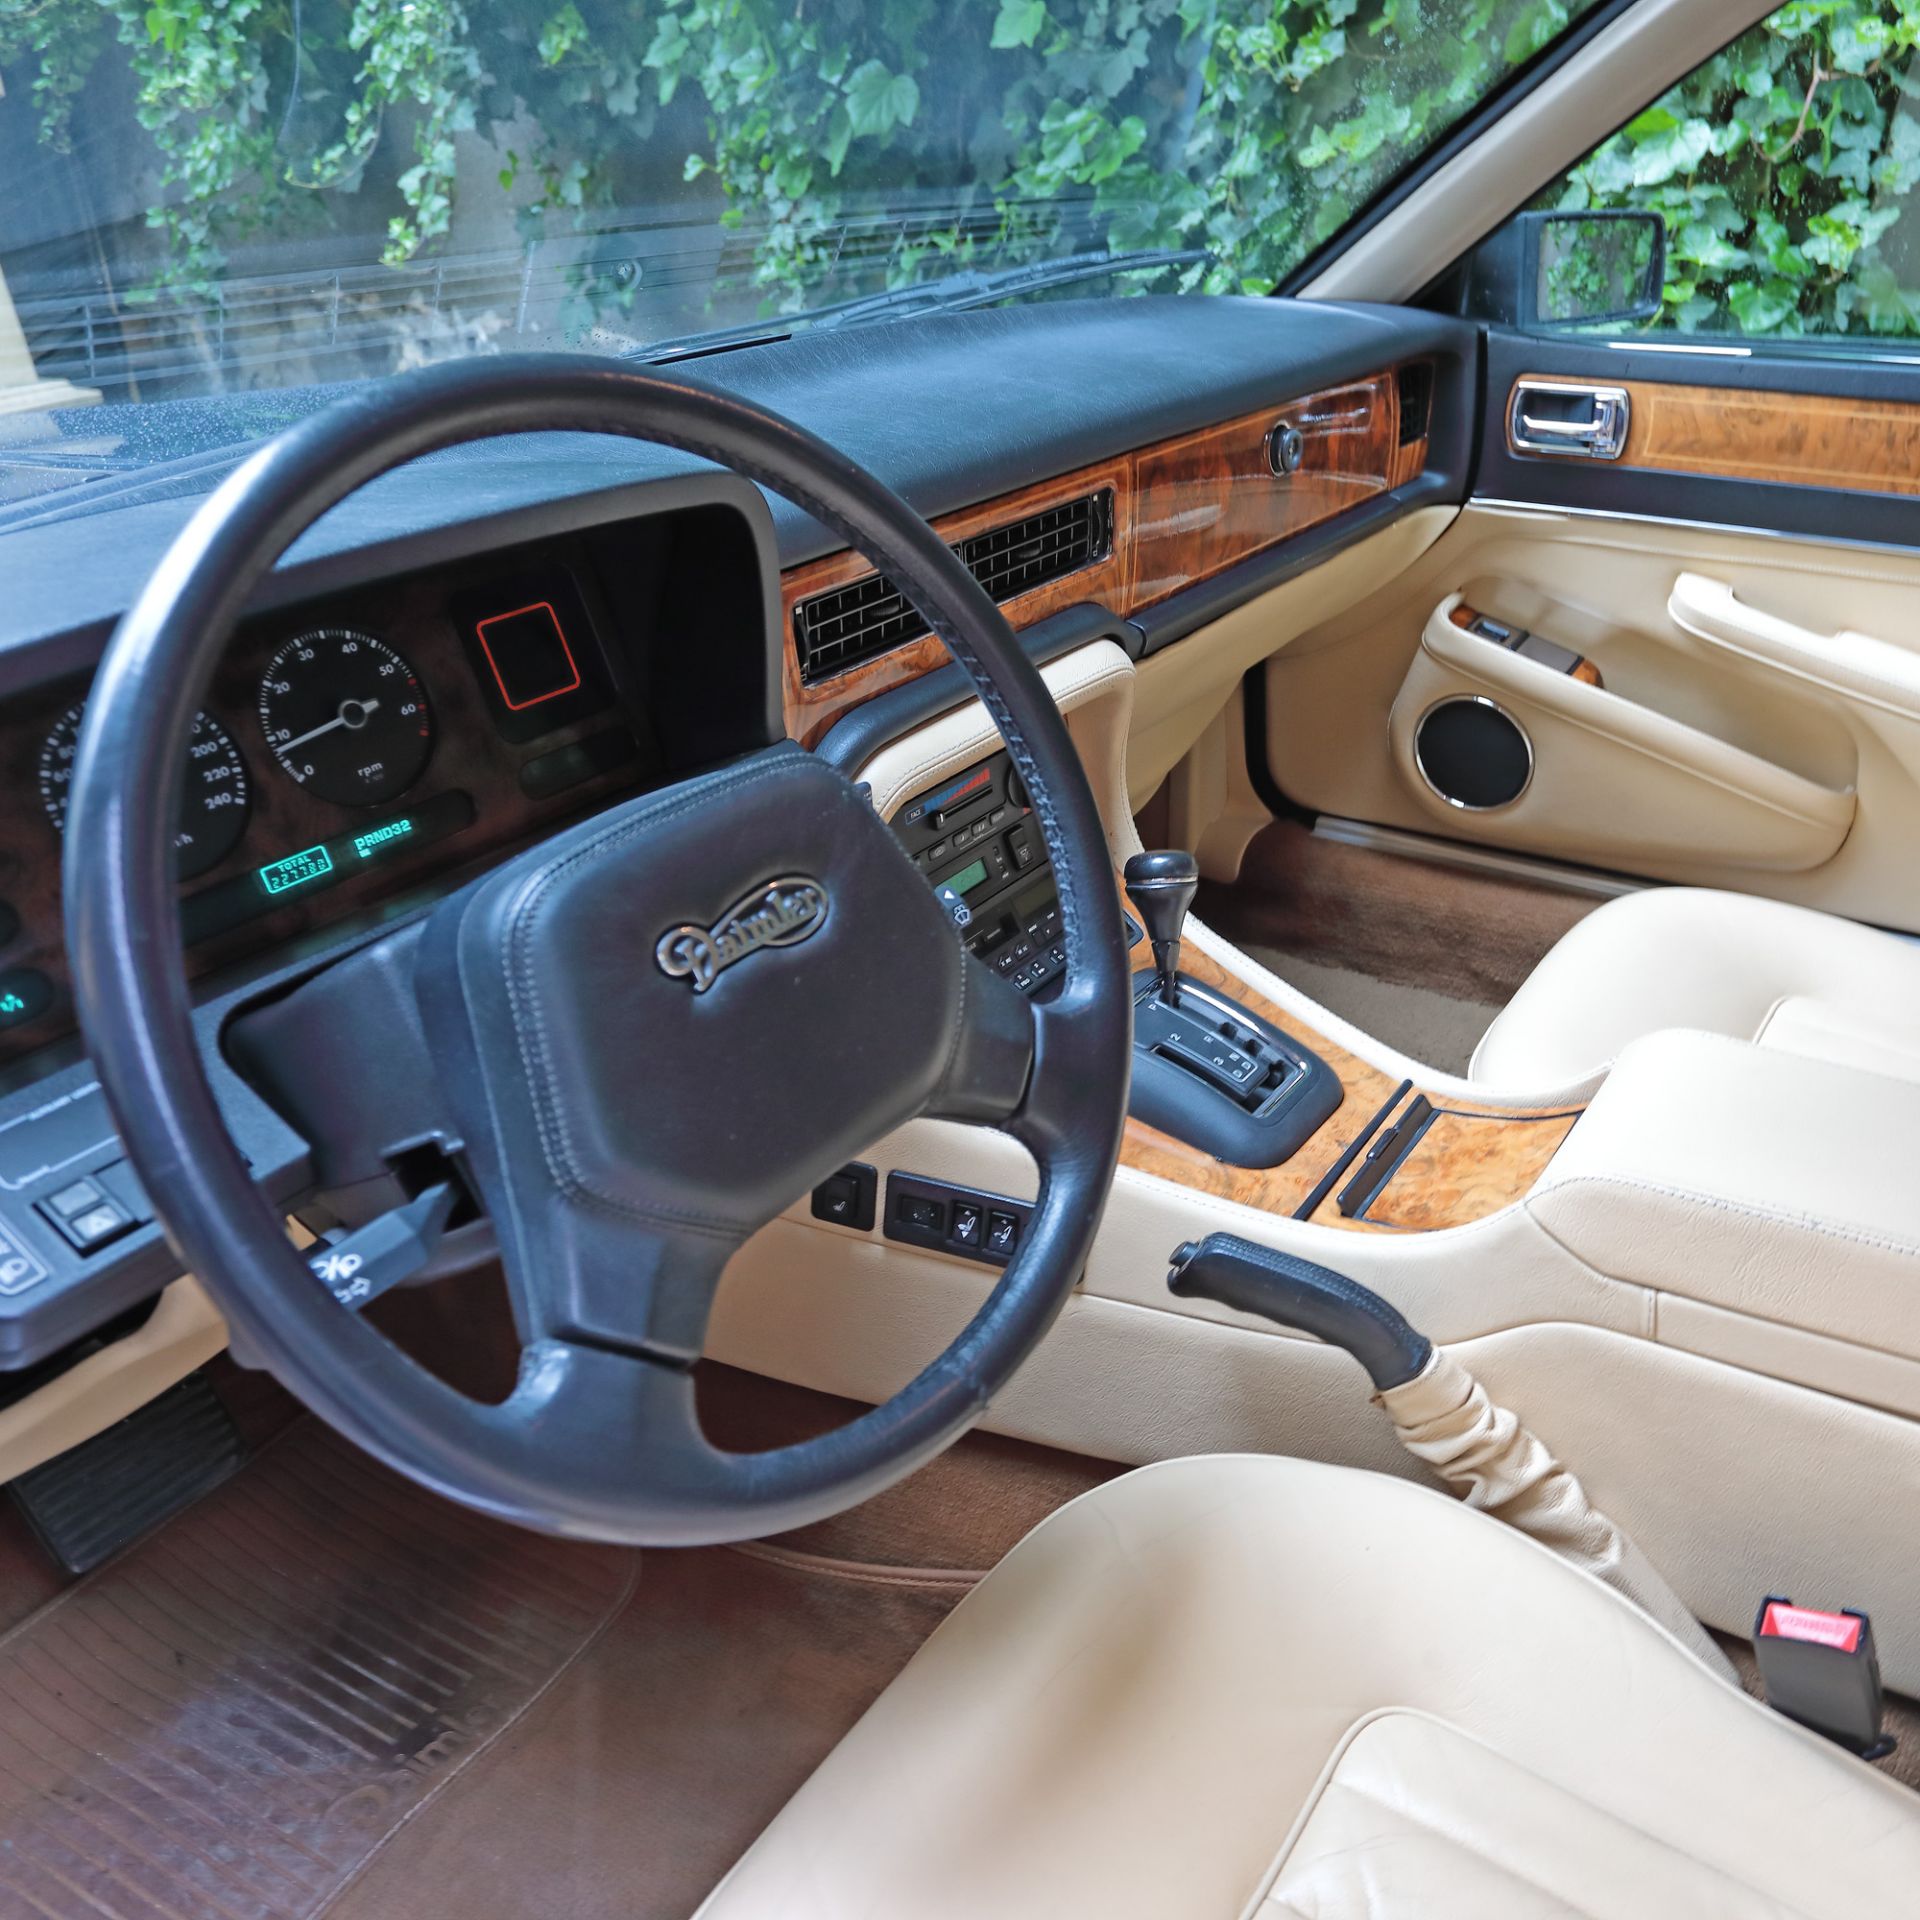 Jaguar XJ40 - Daimler, 1989 - Image 8 of 13